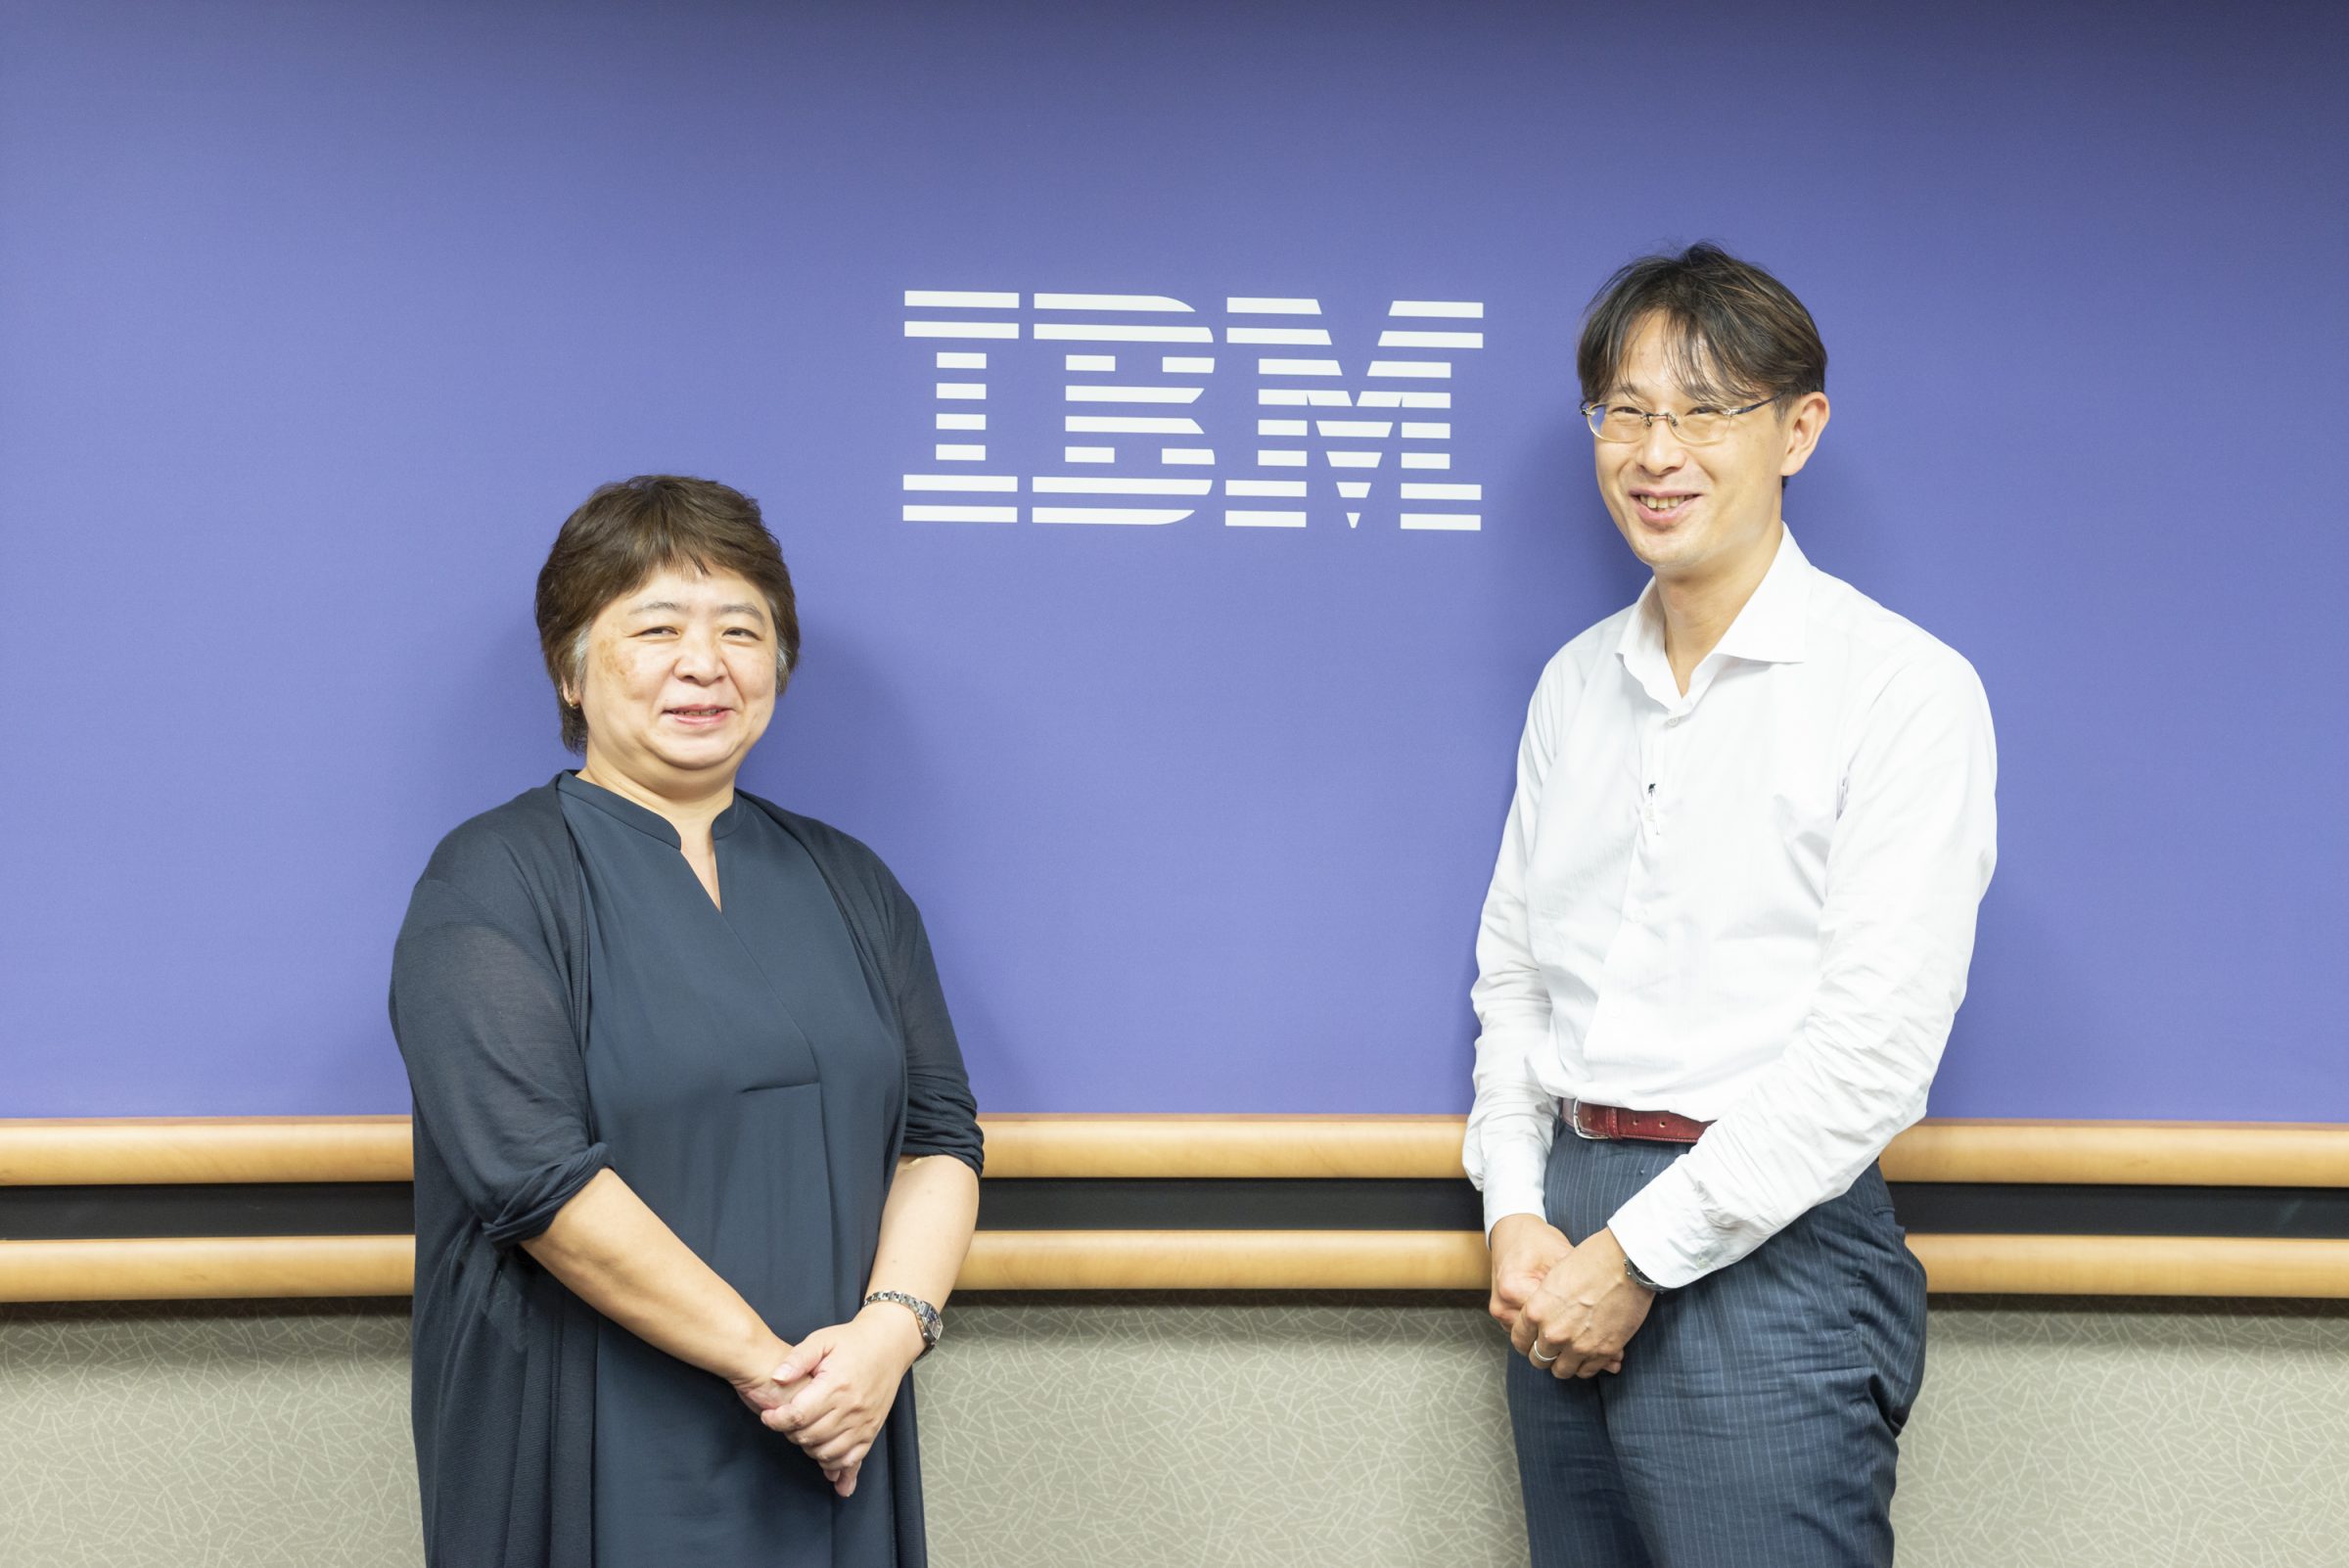 IBMのロゴが掲げられている青い壁の前で、ロゴを挟んで左に紺の服を着た女性、右に白いYシャツの男性が立っている